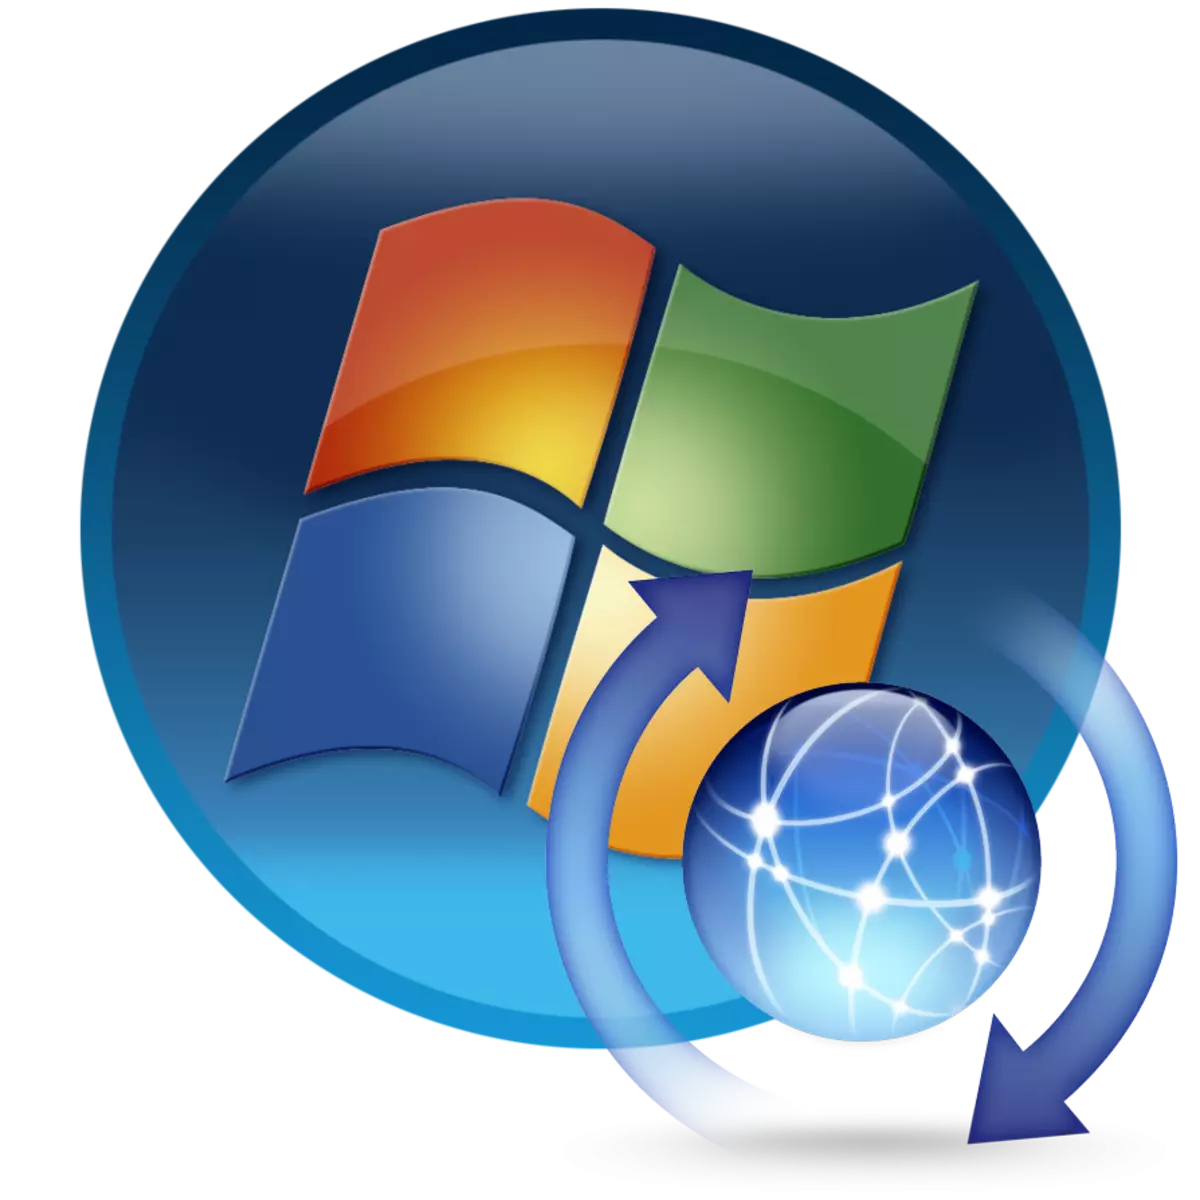 დააინსტალირეთ Windows 7 კომპიუტერი Windows 7-ზე